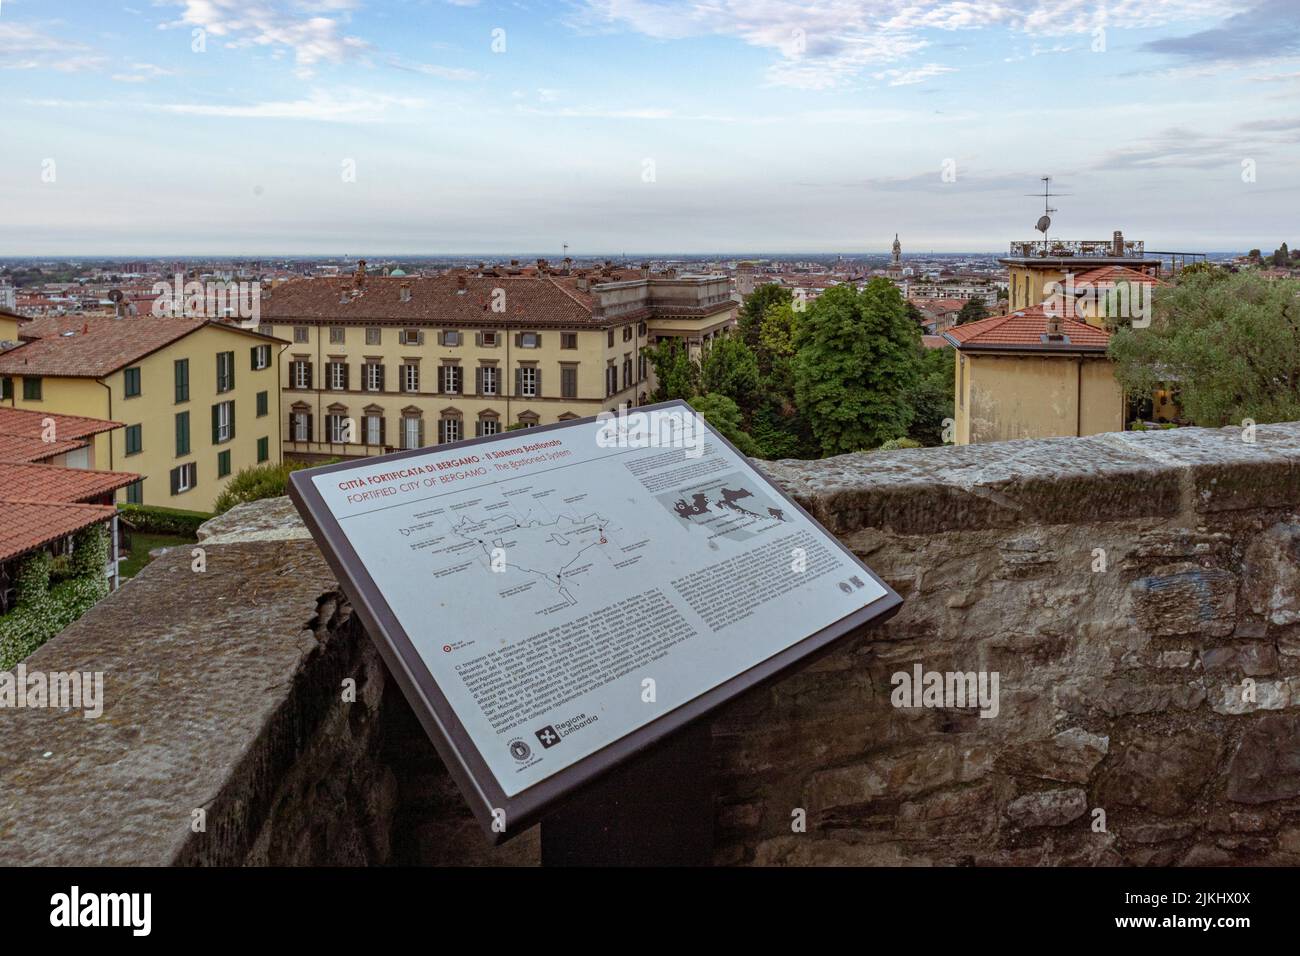 Un'immagine aerea del paesaggio urbano dalle mura veneziane di Bergamo e un banco informazioni Foto Stock